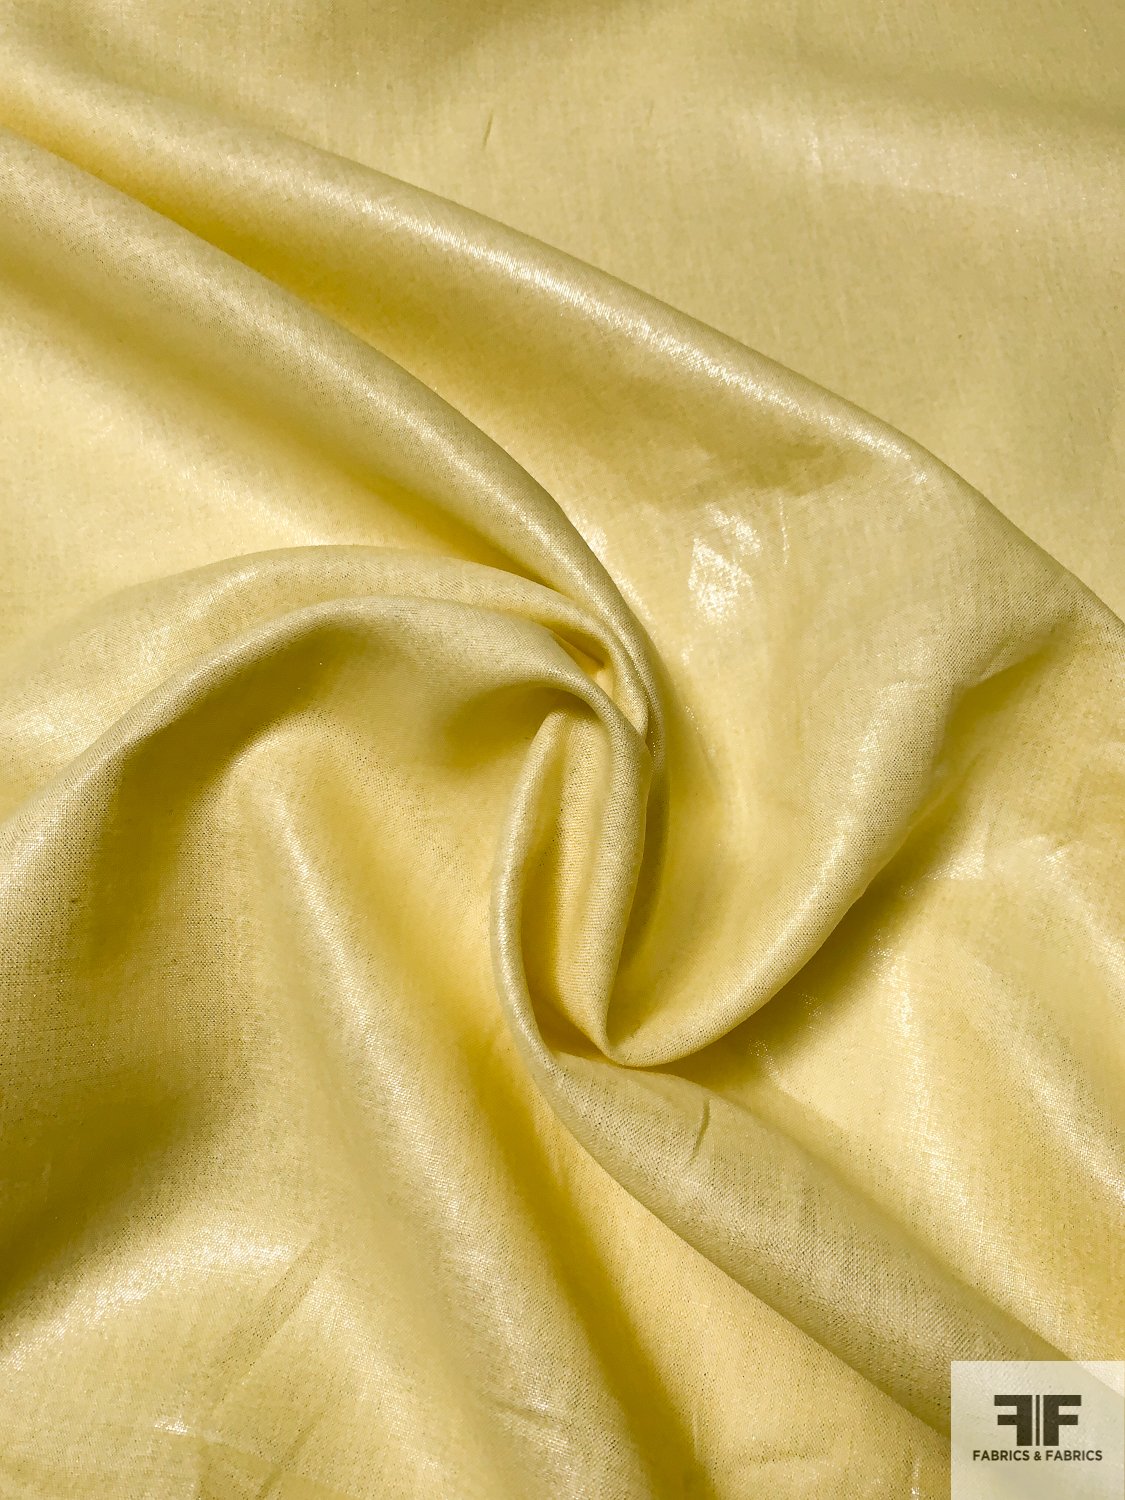 Butter Yellow Linen with Light Metallic Silver Foil Print